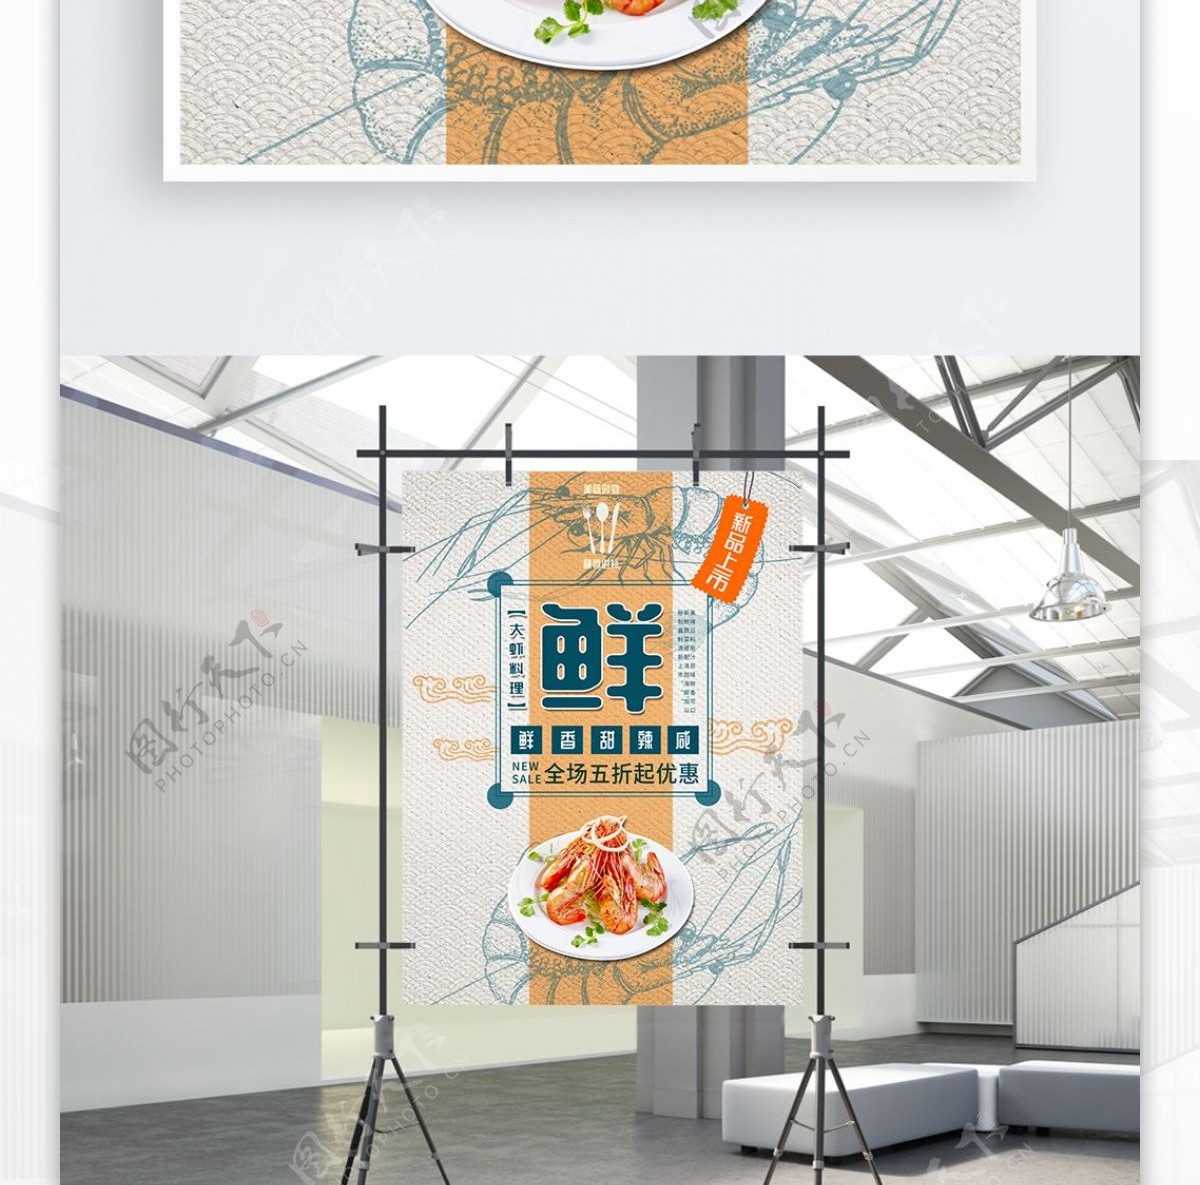 大虾海鲜复古纹理新品上市美食促销海报